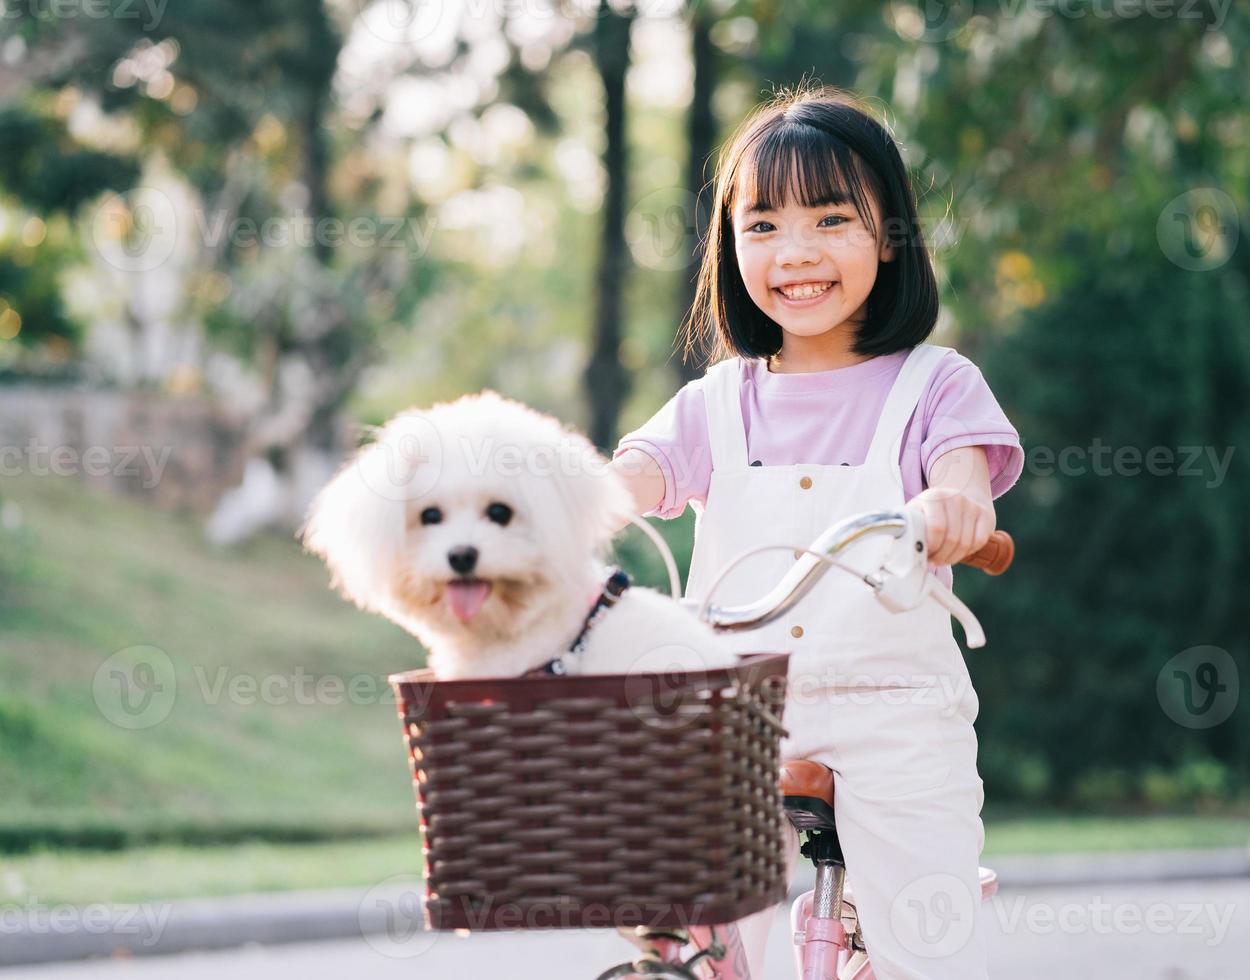 immagine di una bambina asiatica in bicicletta con il suo cane al parco foto